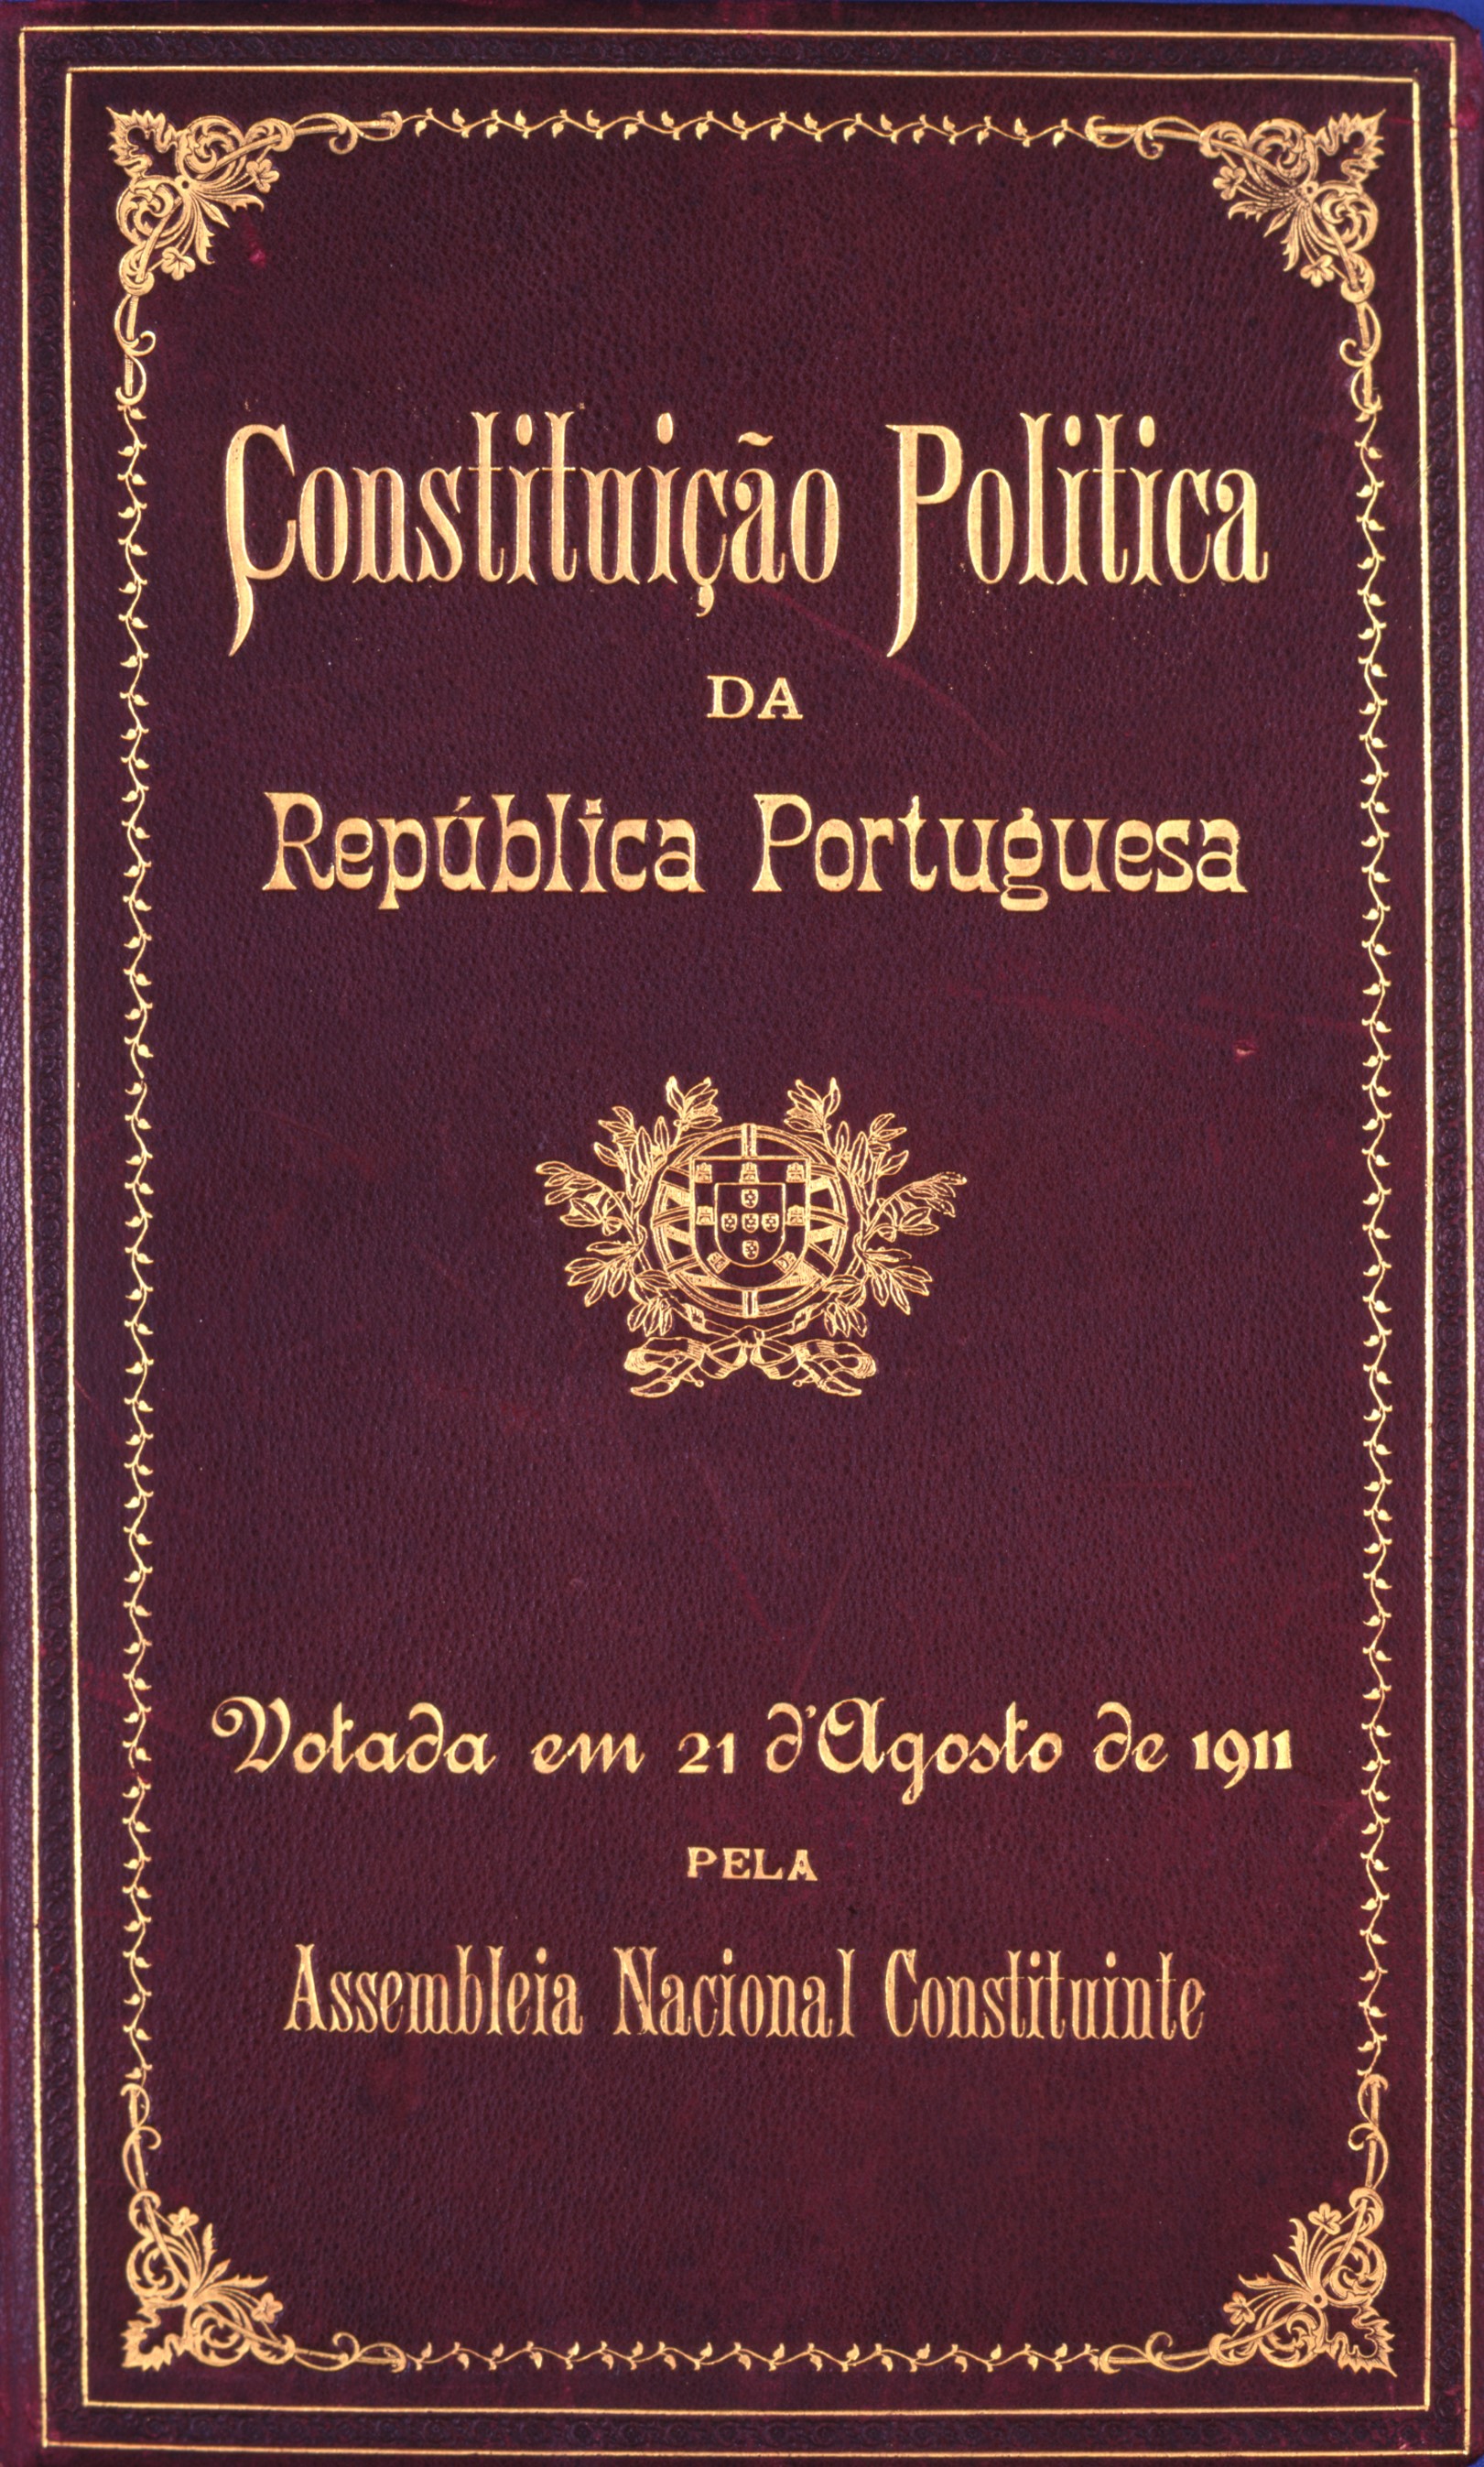 Capa da Constituição de 1822